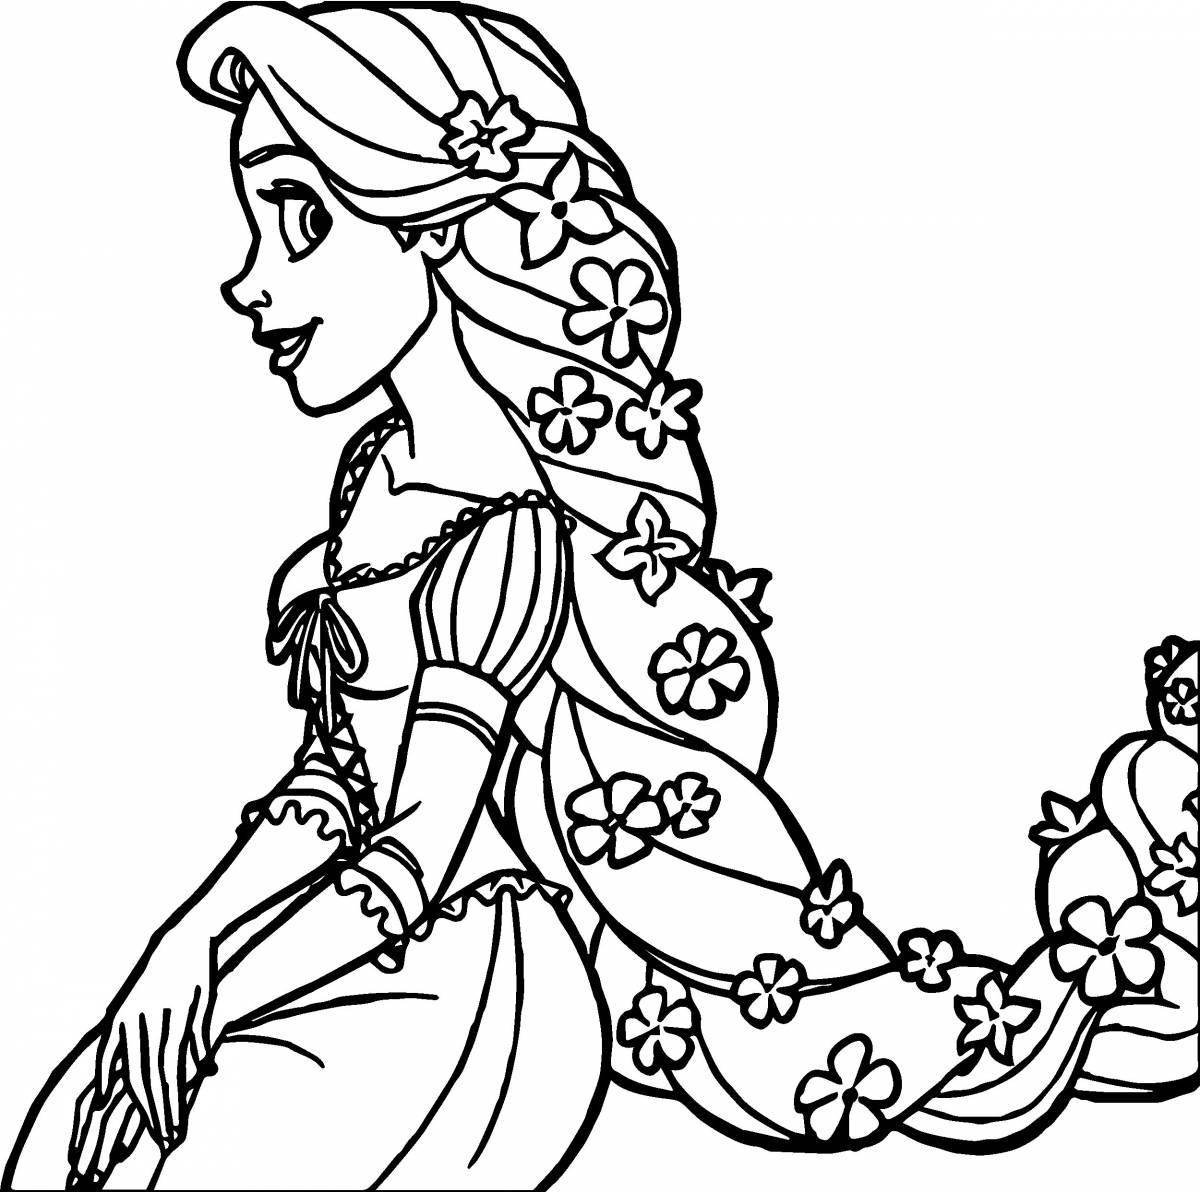 Раскраска яркая принцесса с длинными волосами